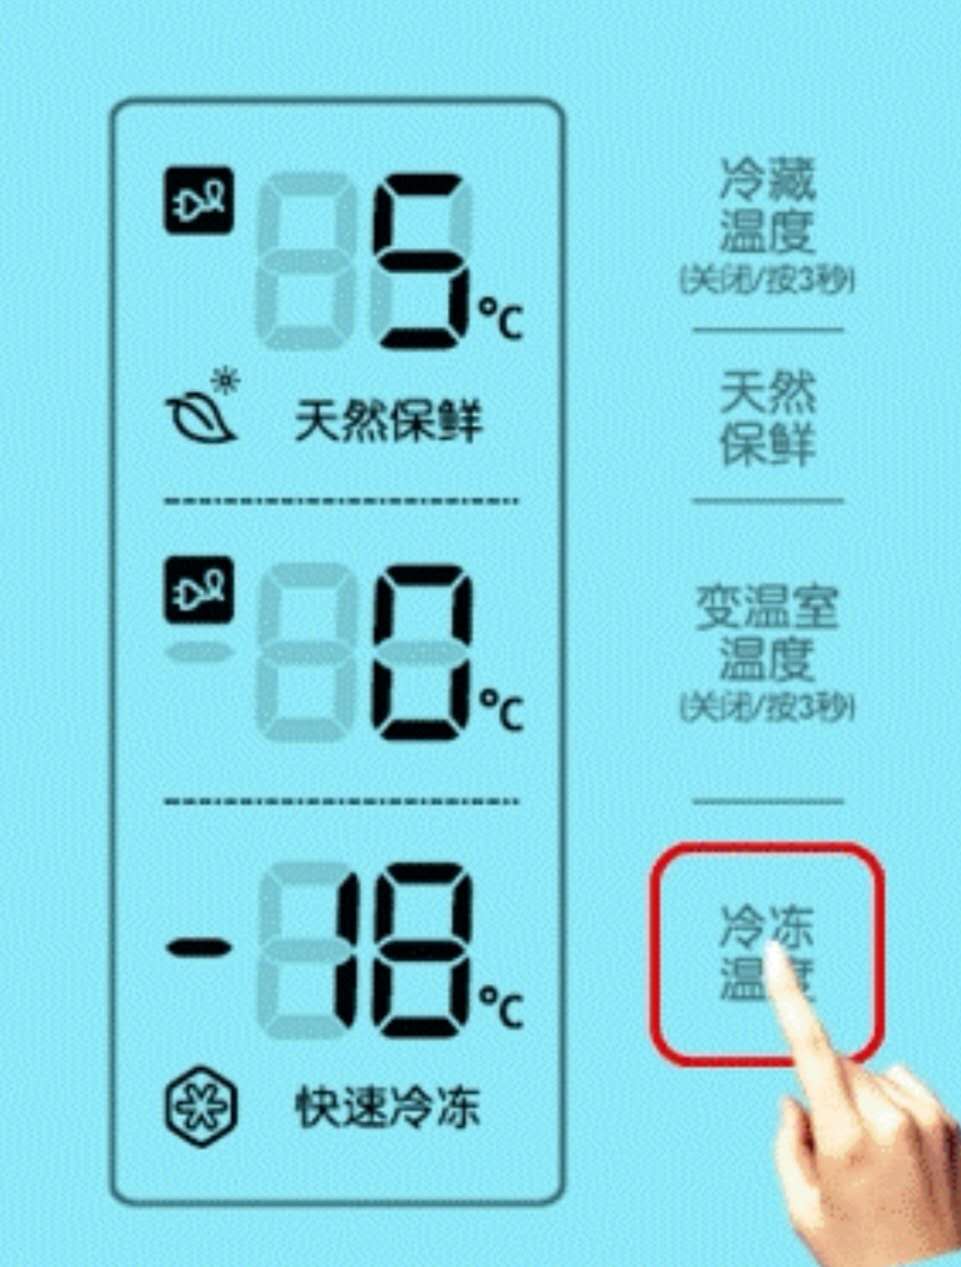 郑州三星冰箱售后维修部讲解温冰箱度调到多少度合适？